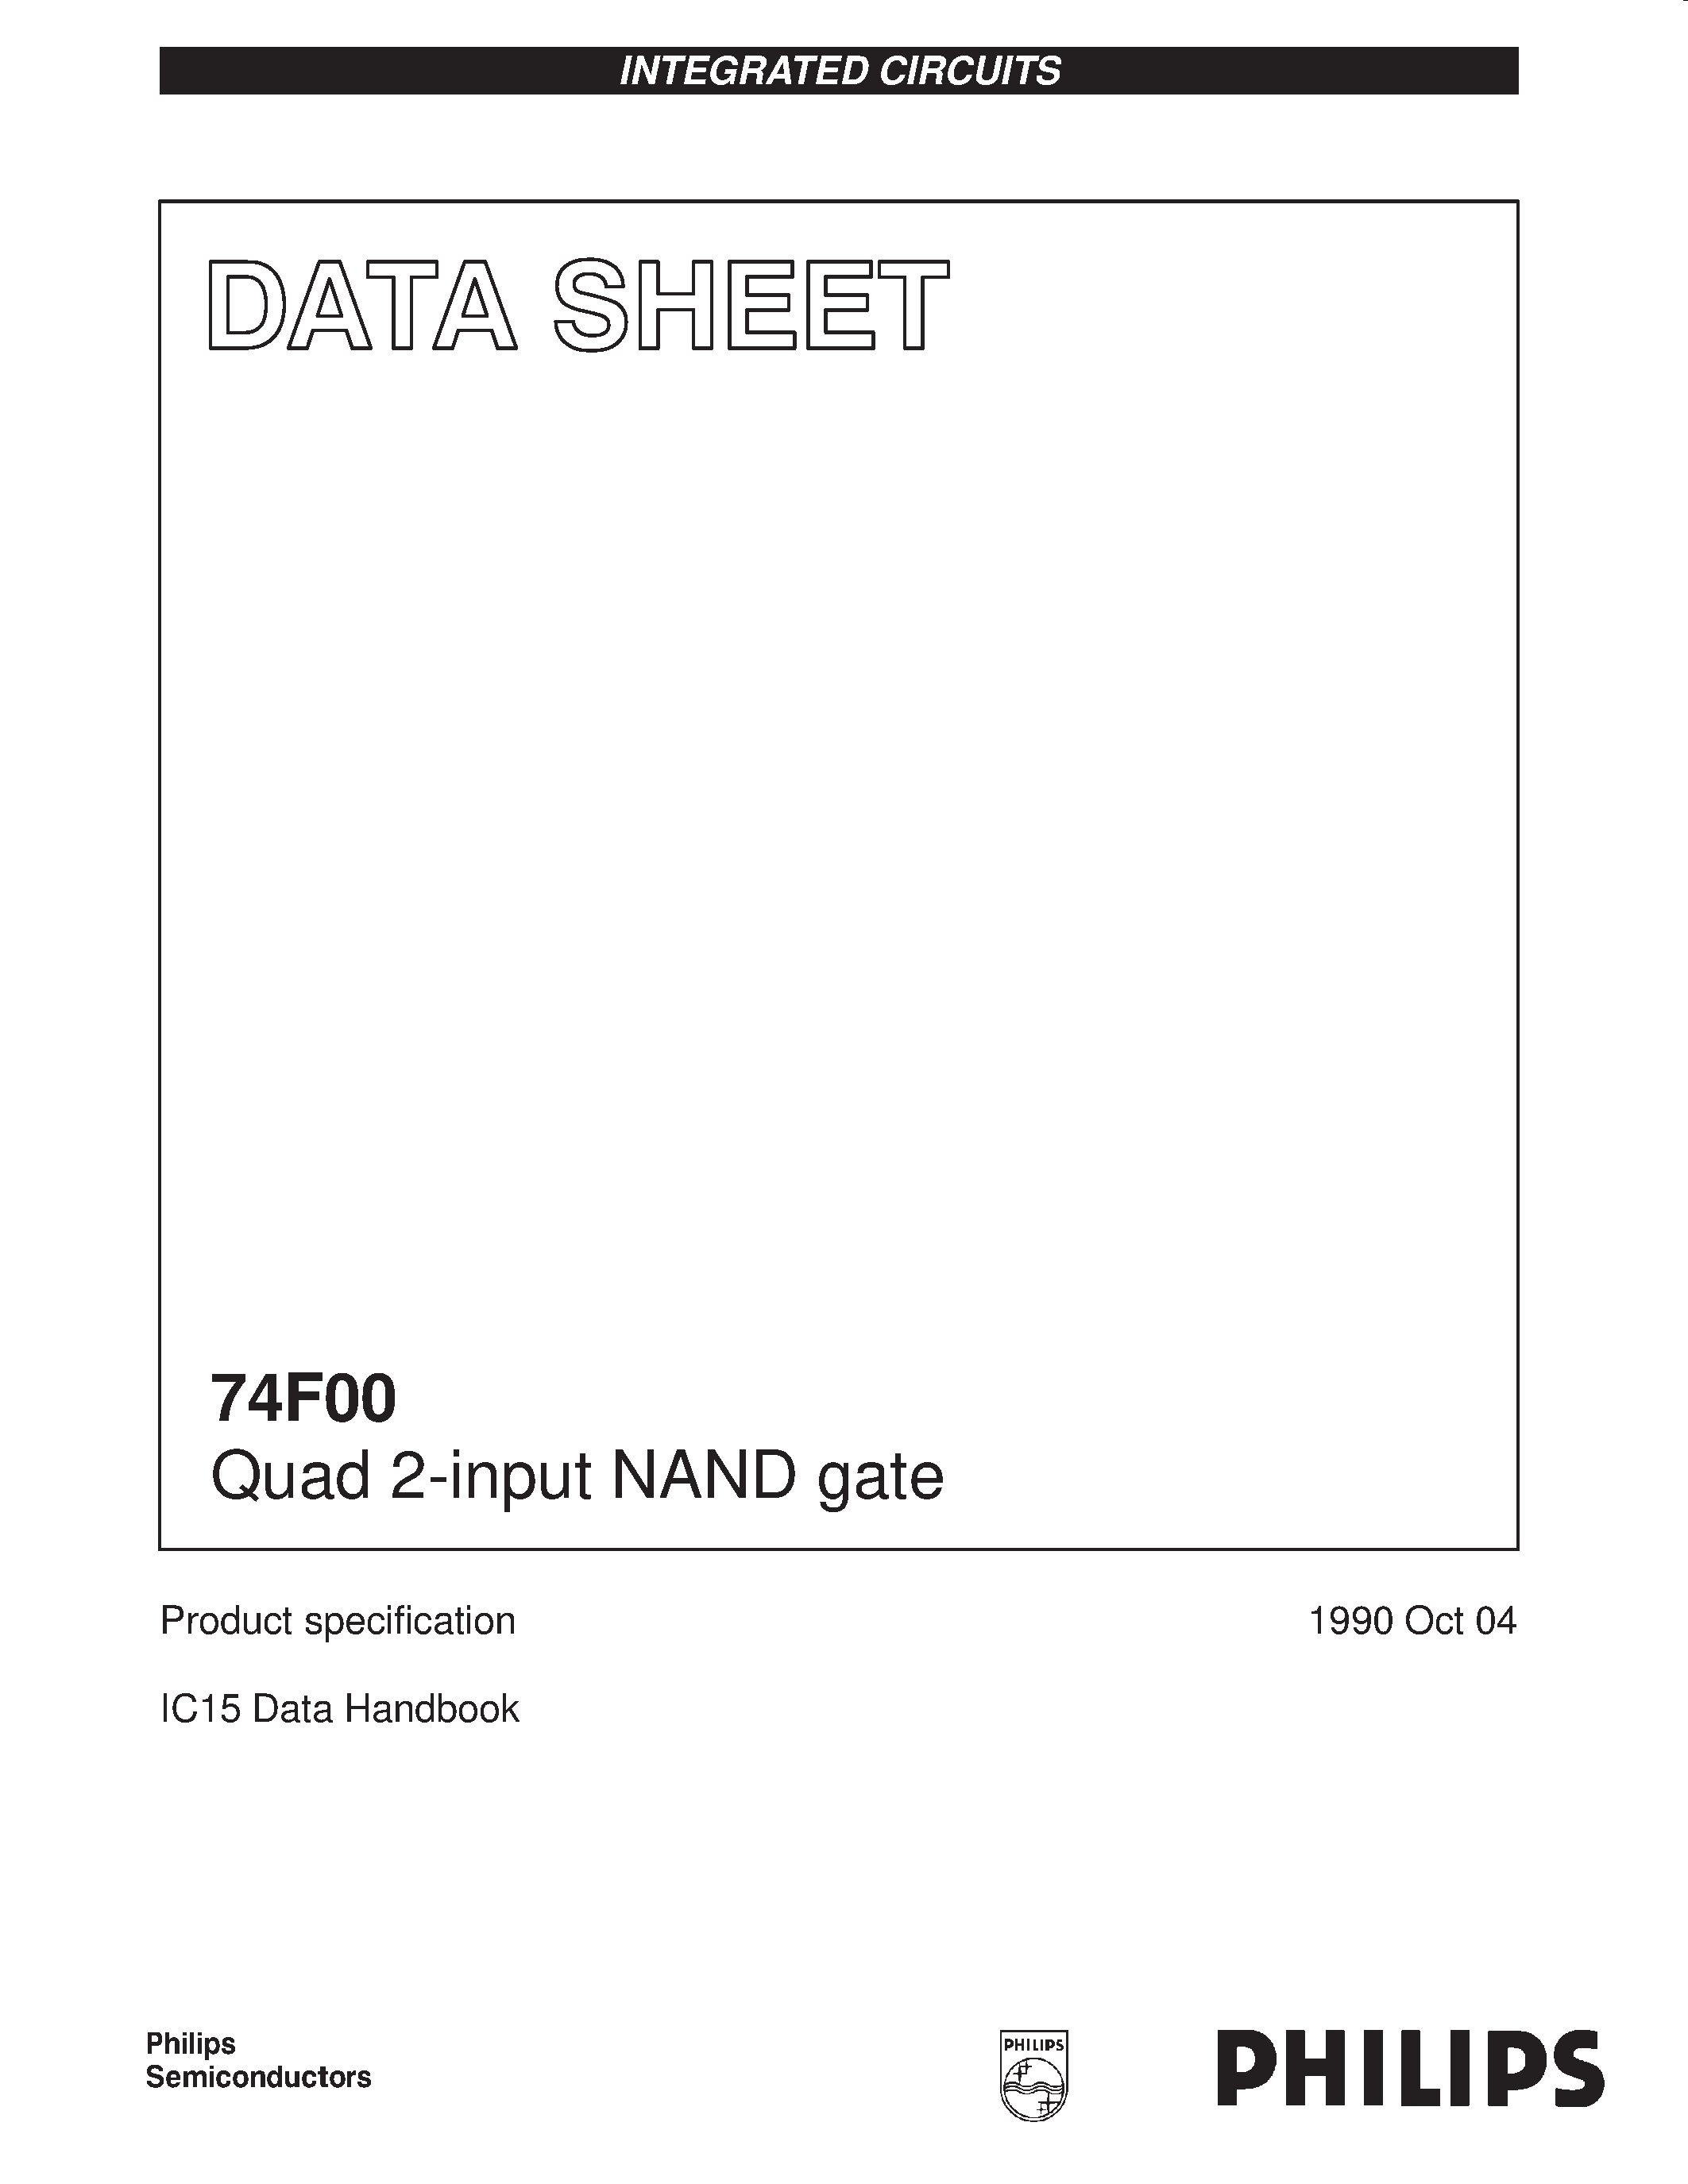 Даташит 74F00 - Quad 2-input NAND gate страница 1